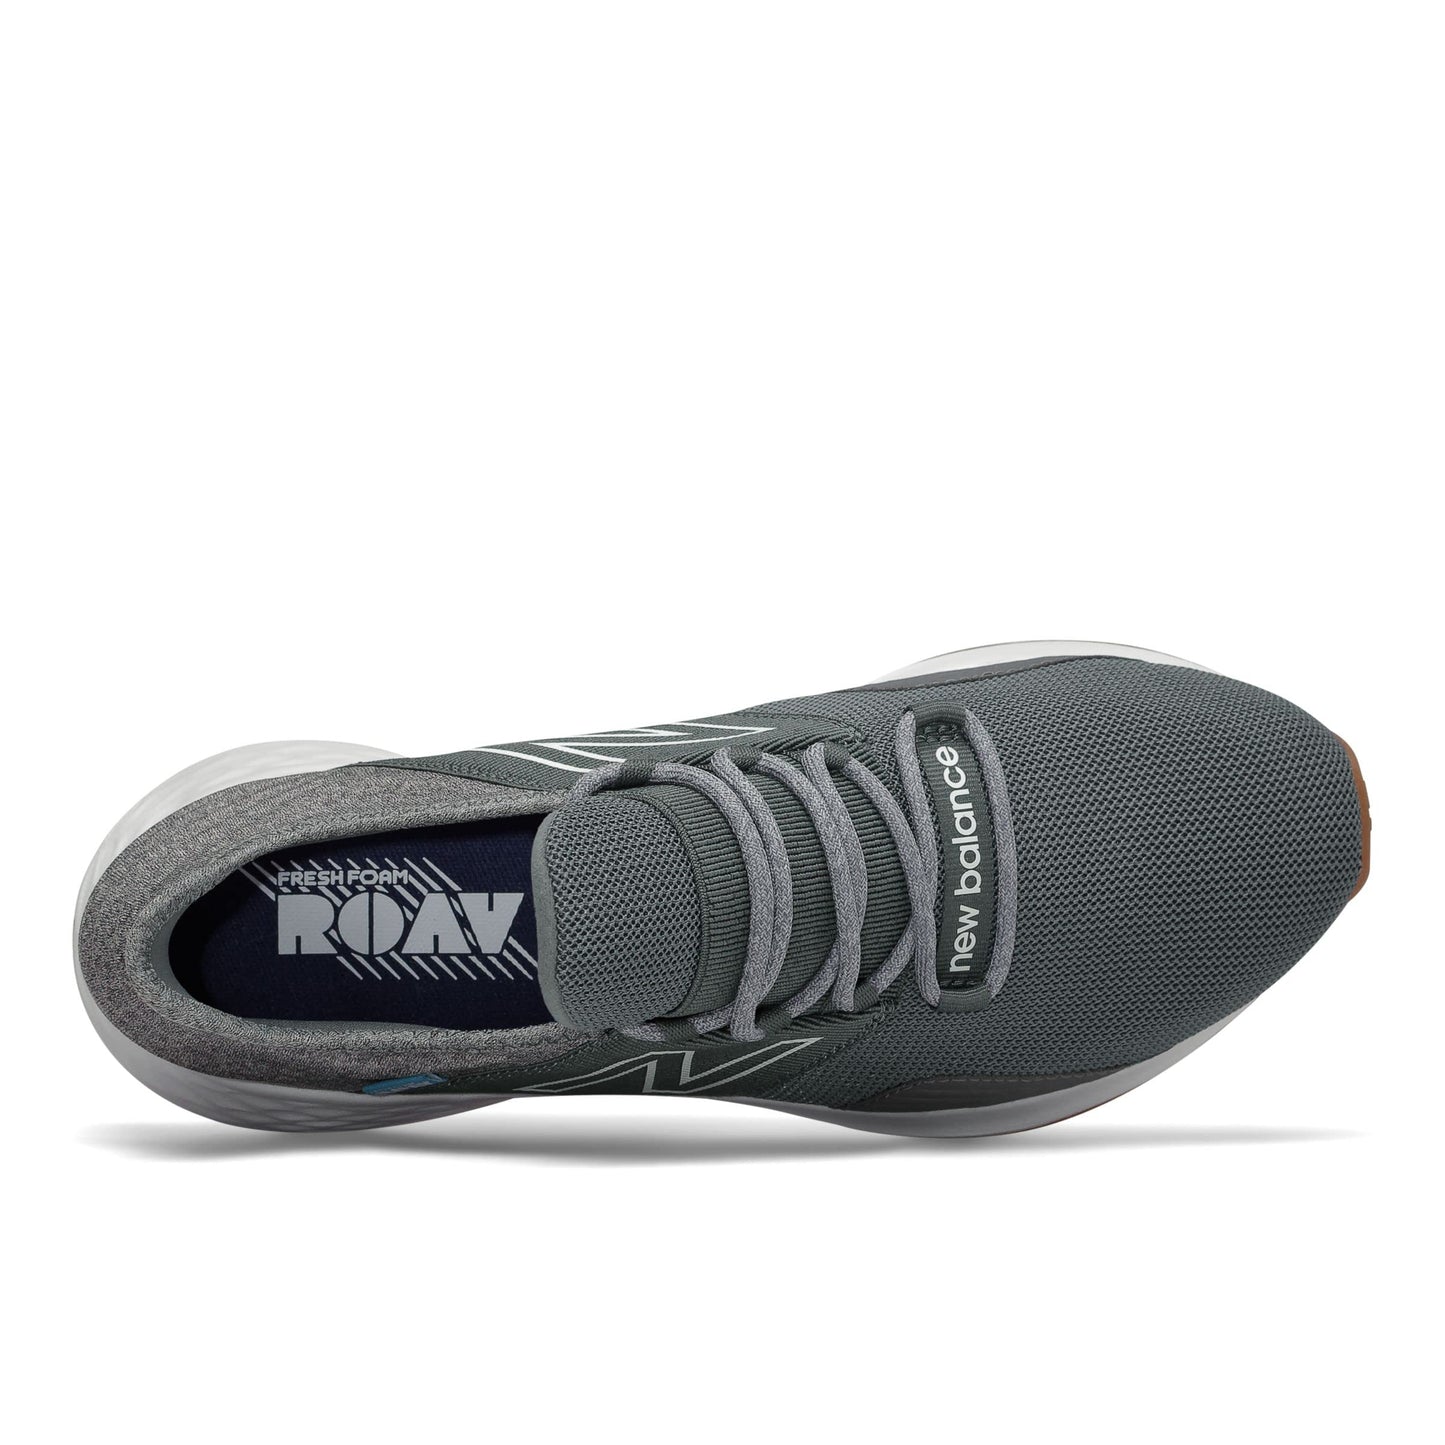 New Balance Men's Fresh Foam Roav V1 Sneaker, Lead/Light Aluminum, 10.5